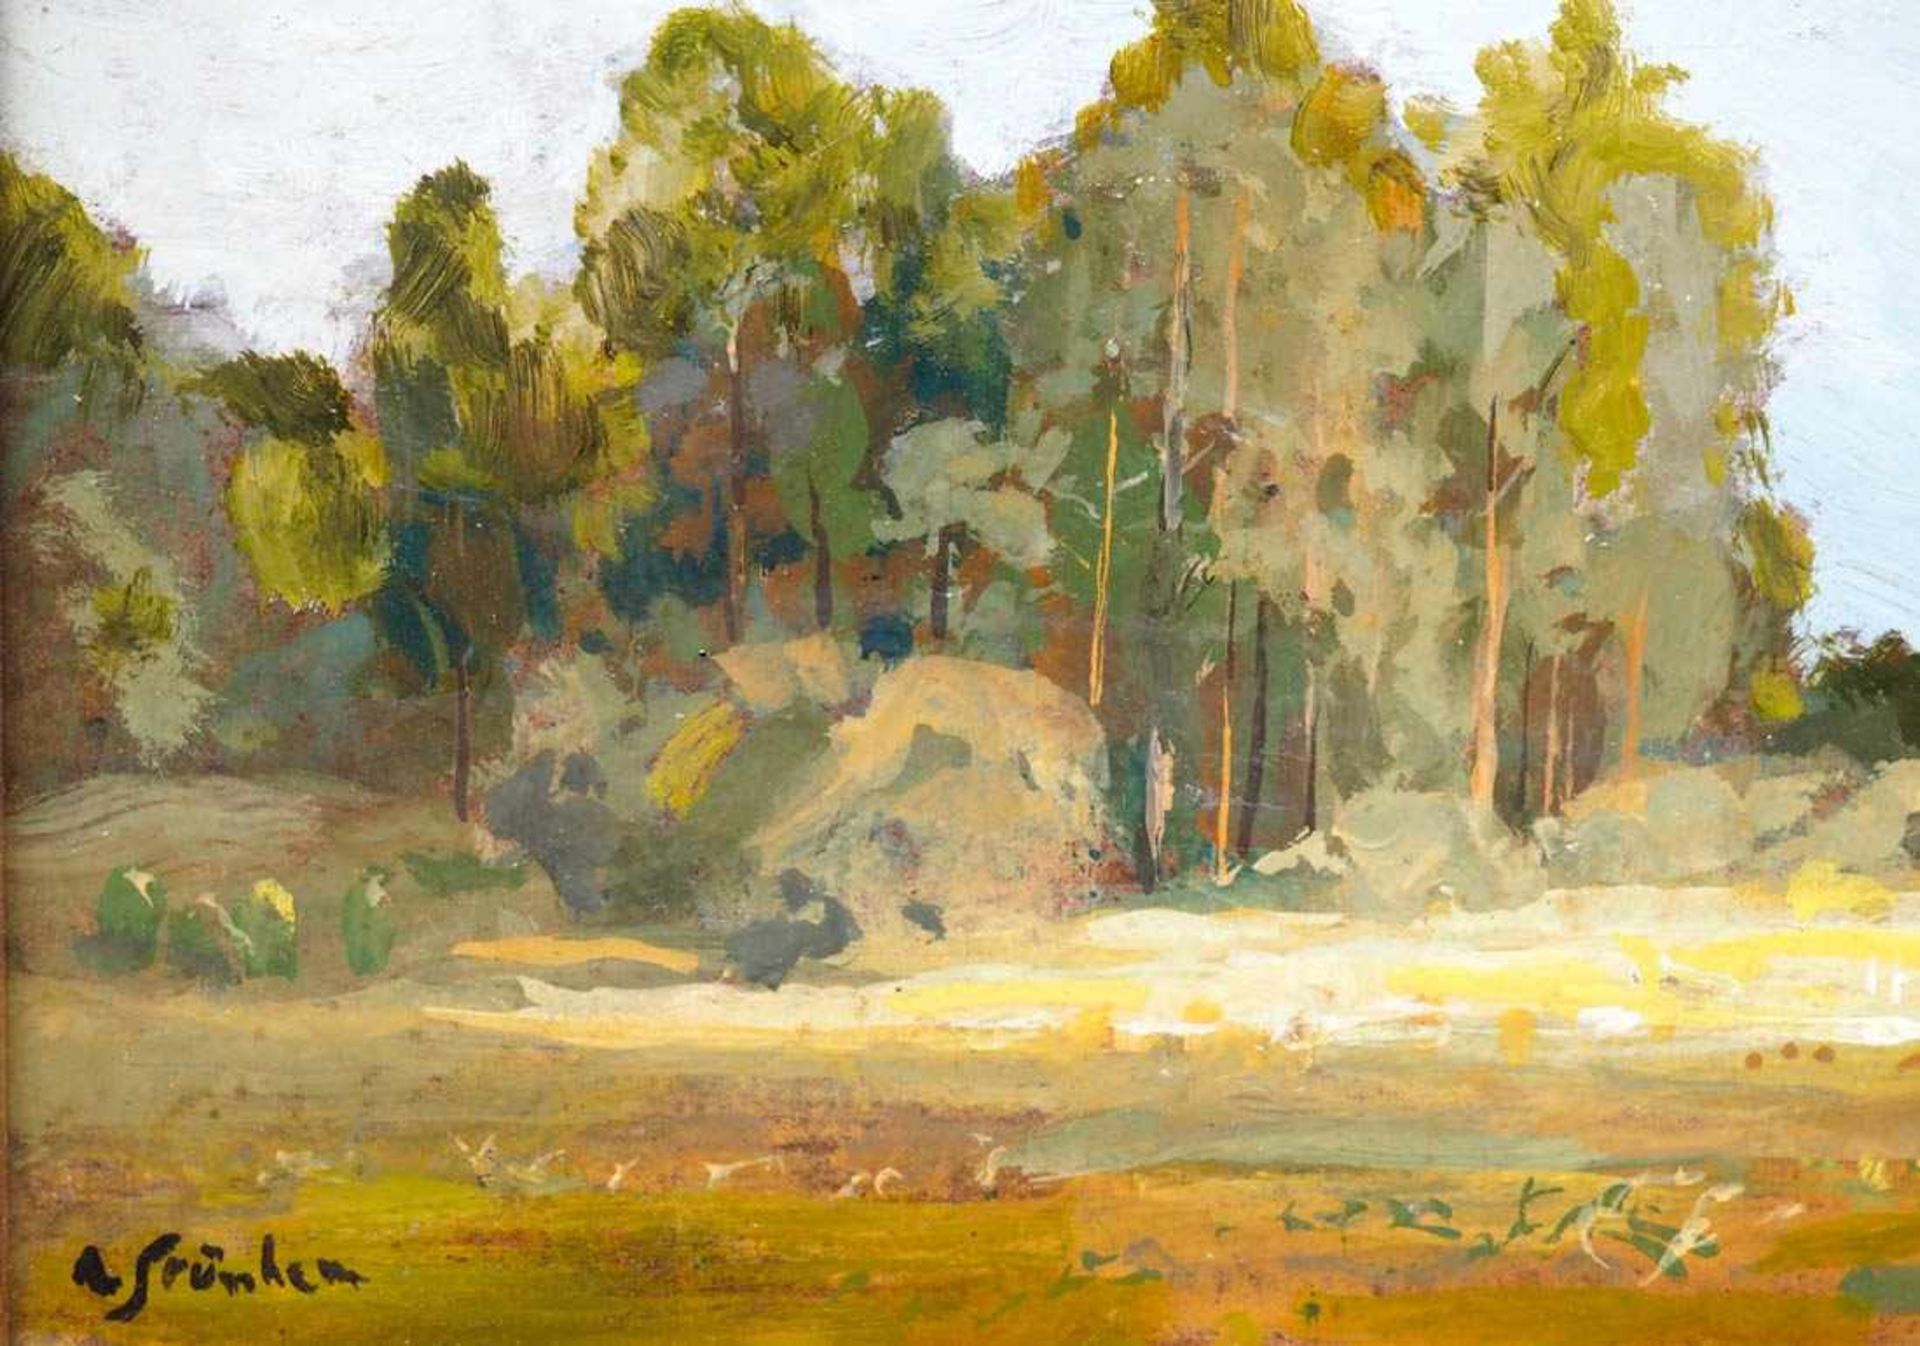 Strübe, Adolf, 1881 - 1973Markgräfler Landschaft mit Laubbäumen unter sommerblauem Himmel. Öl/Kt., - Bild 4 aus 6